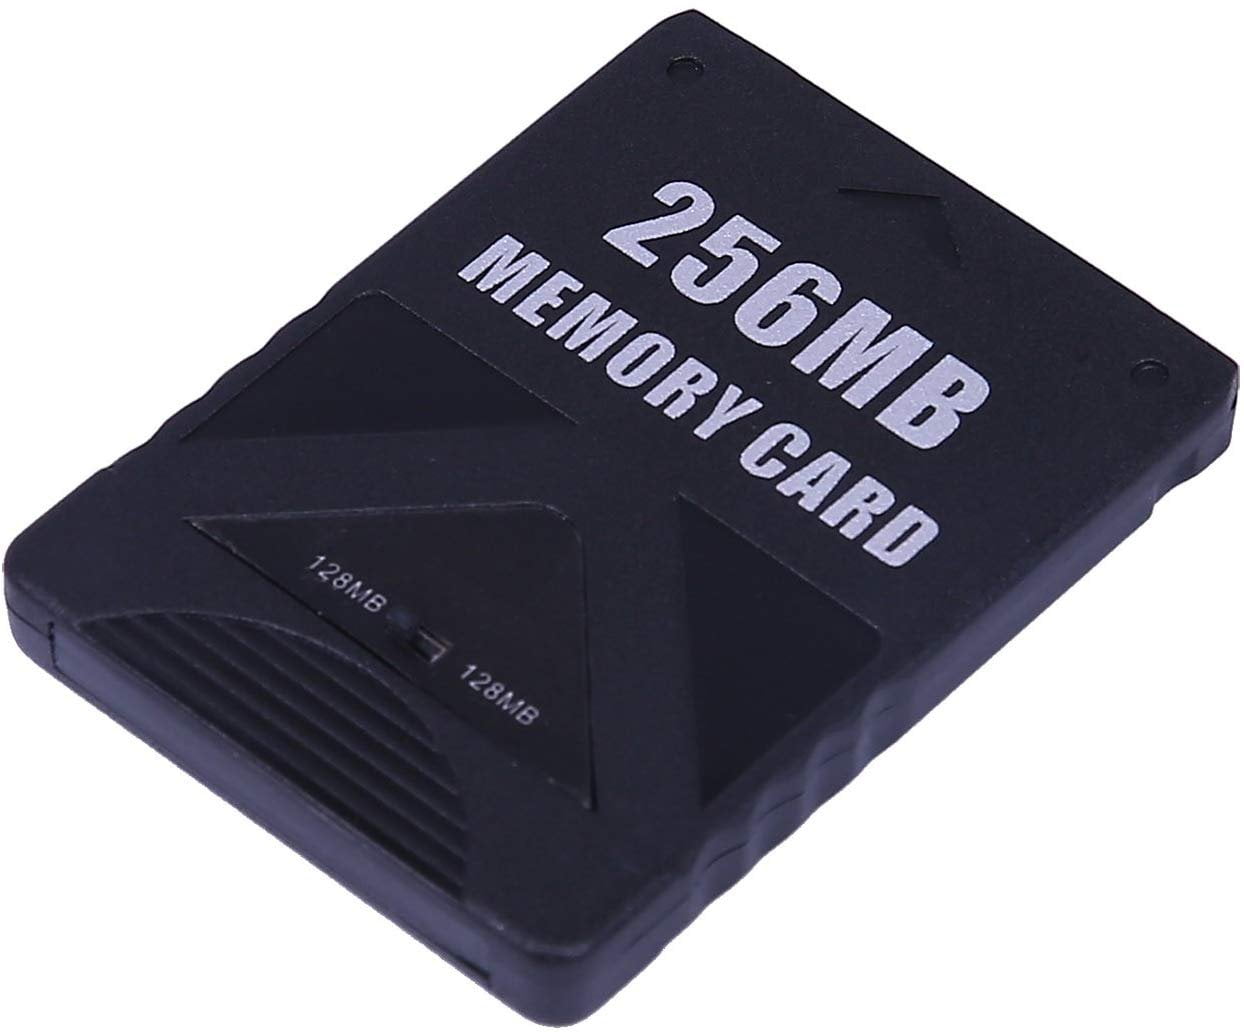 ps2 biggest memory card